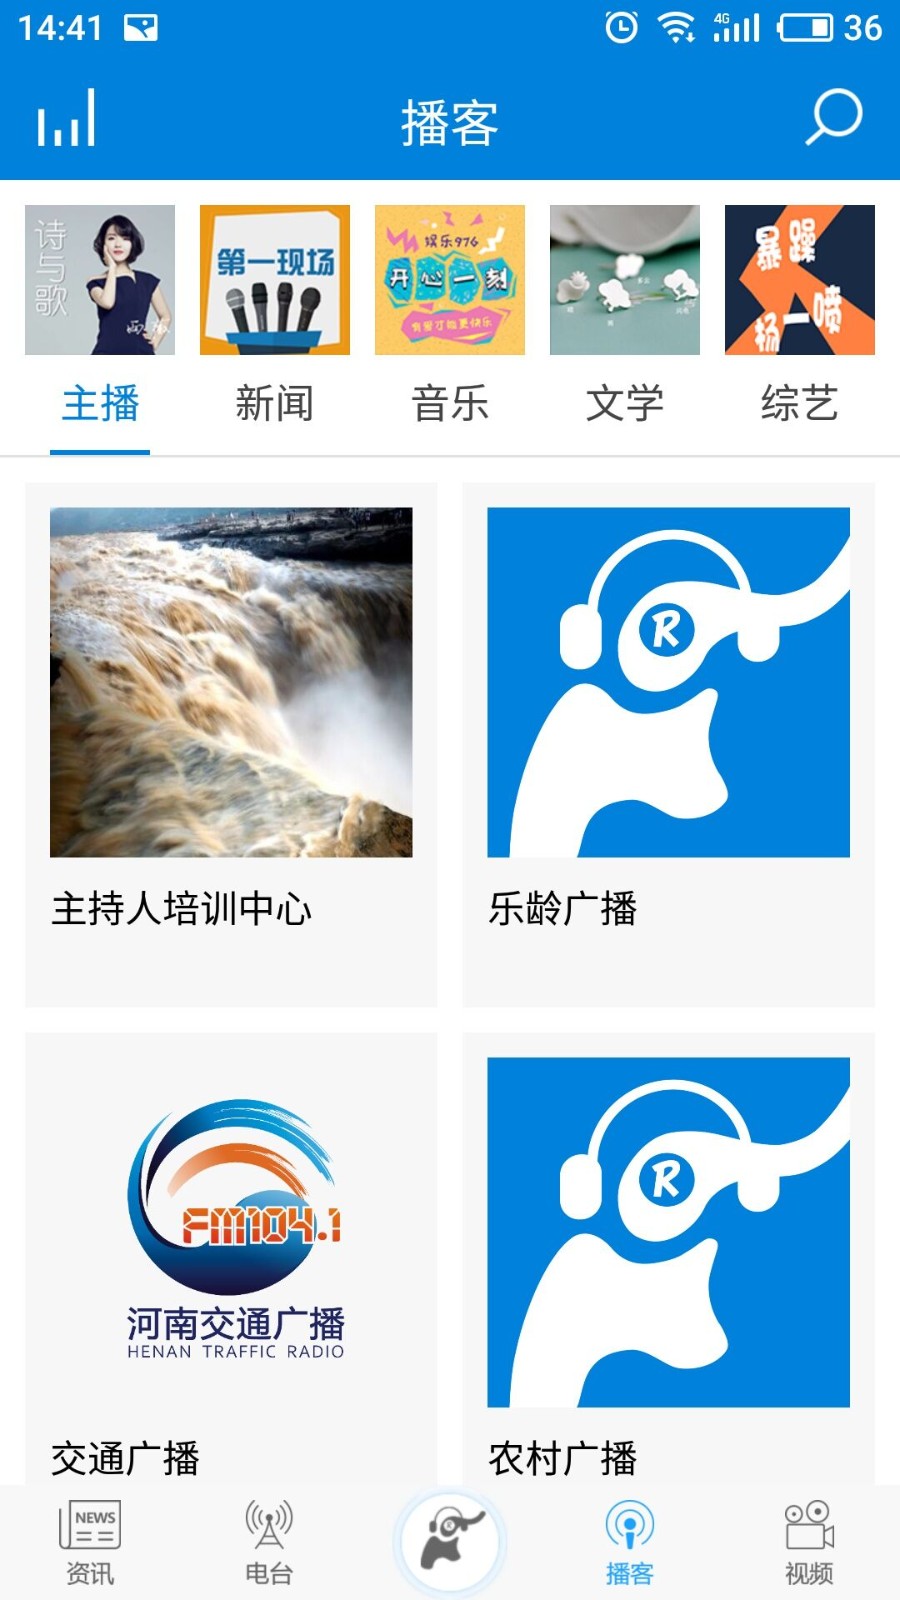 河南广播手机app V4.5.2 官方安卓版截图3